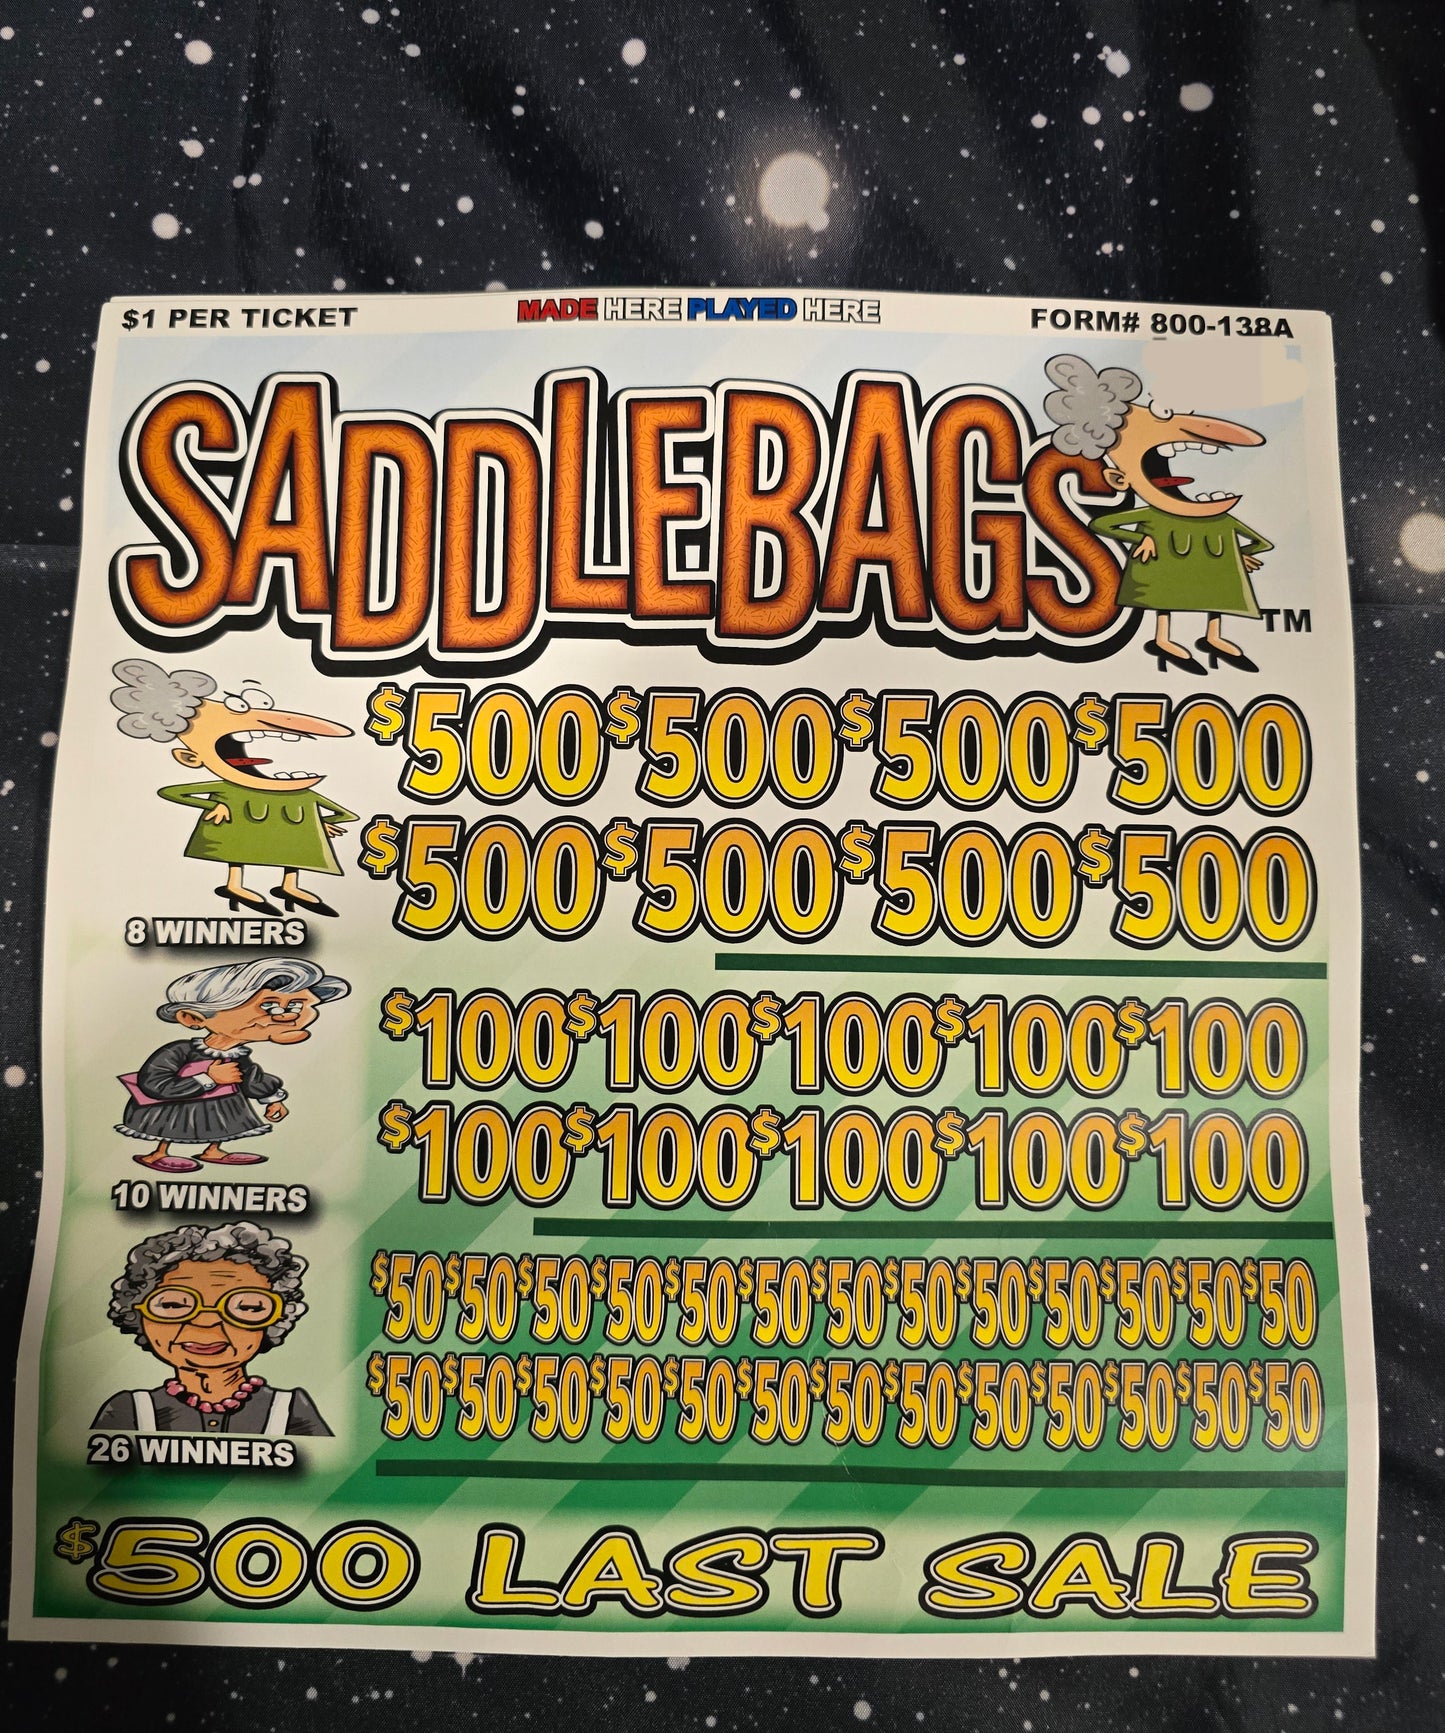 SADDLE BAG JARS WITH LAST SALE